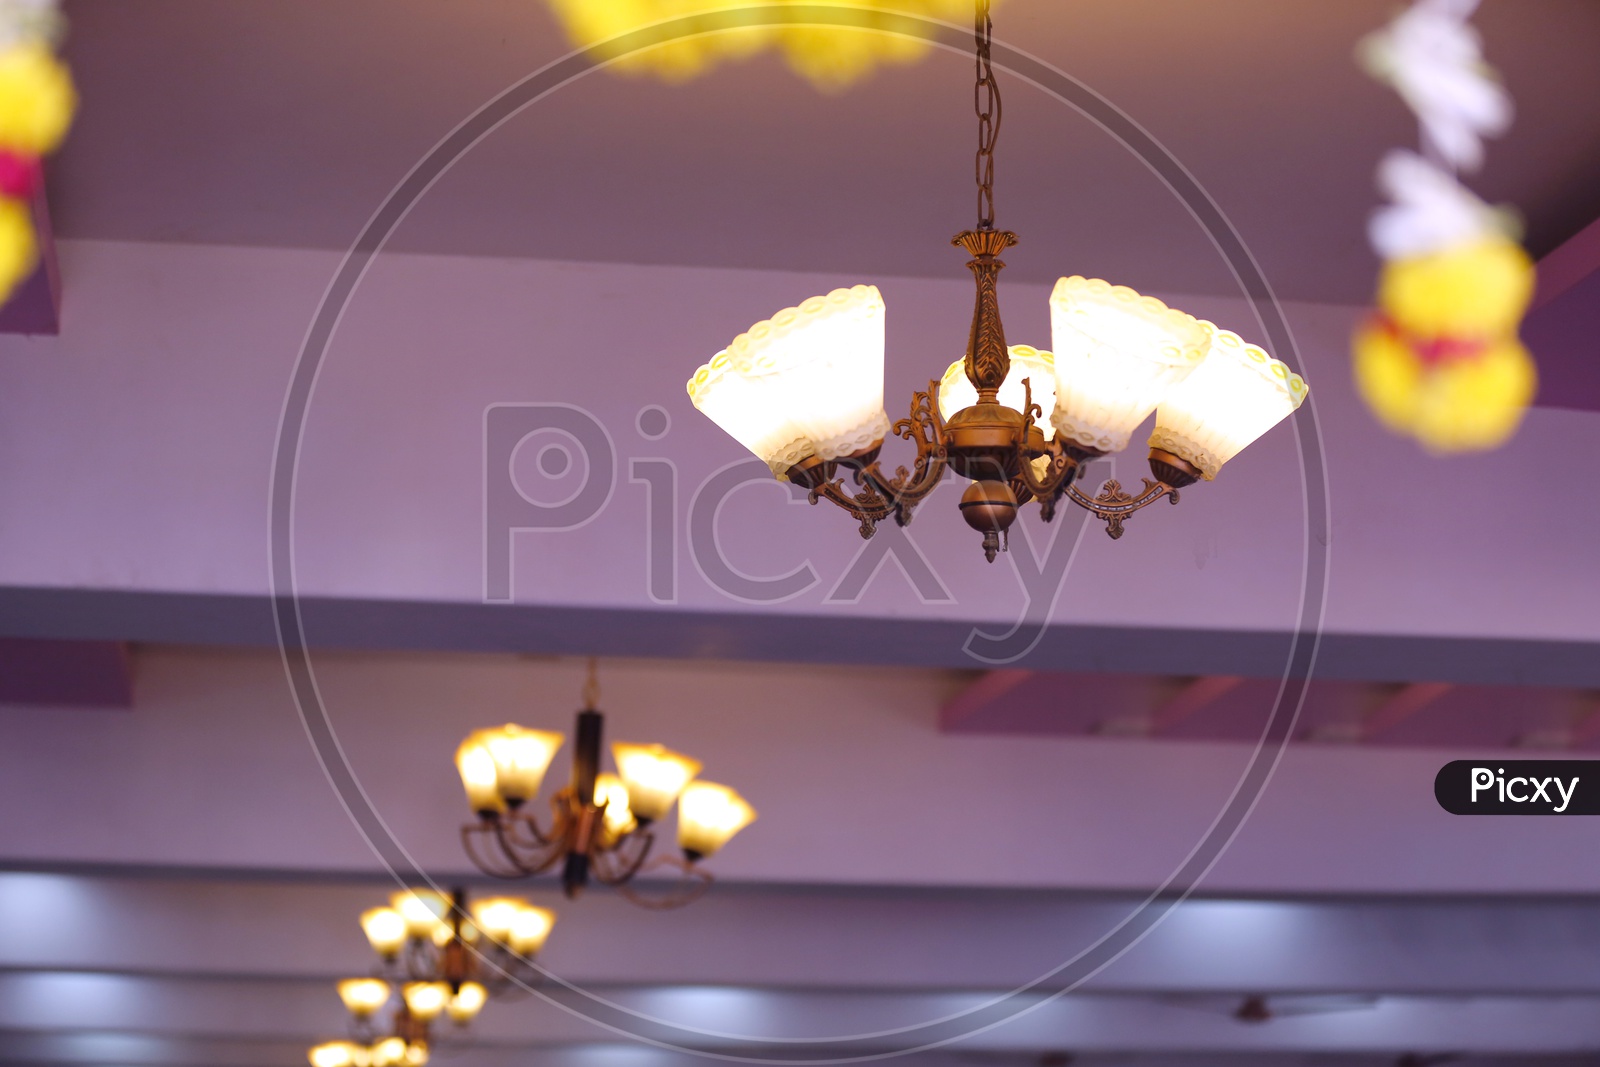 Light Chandeliers in a Wedding Venue